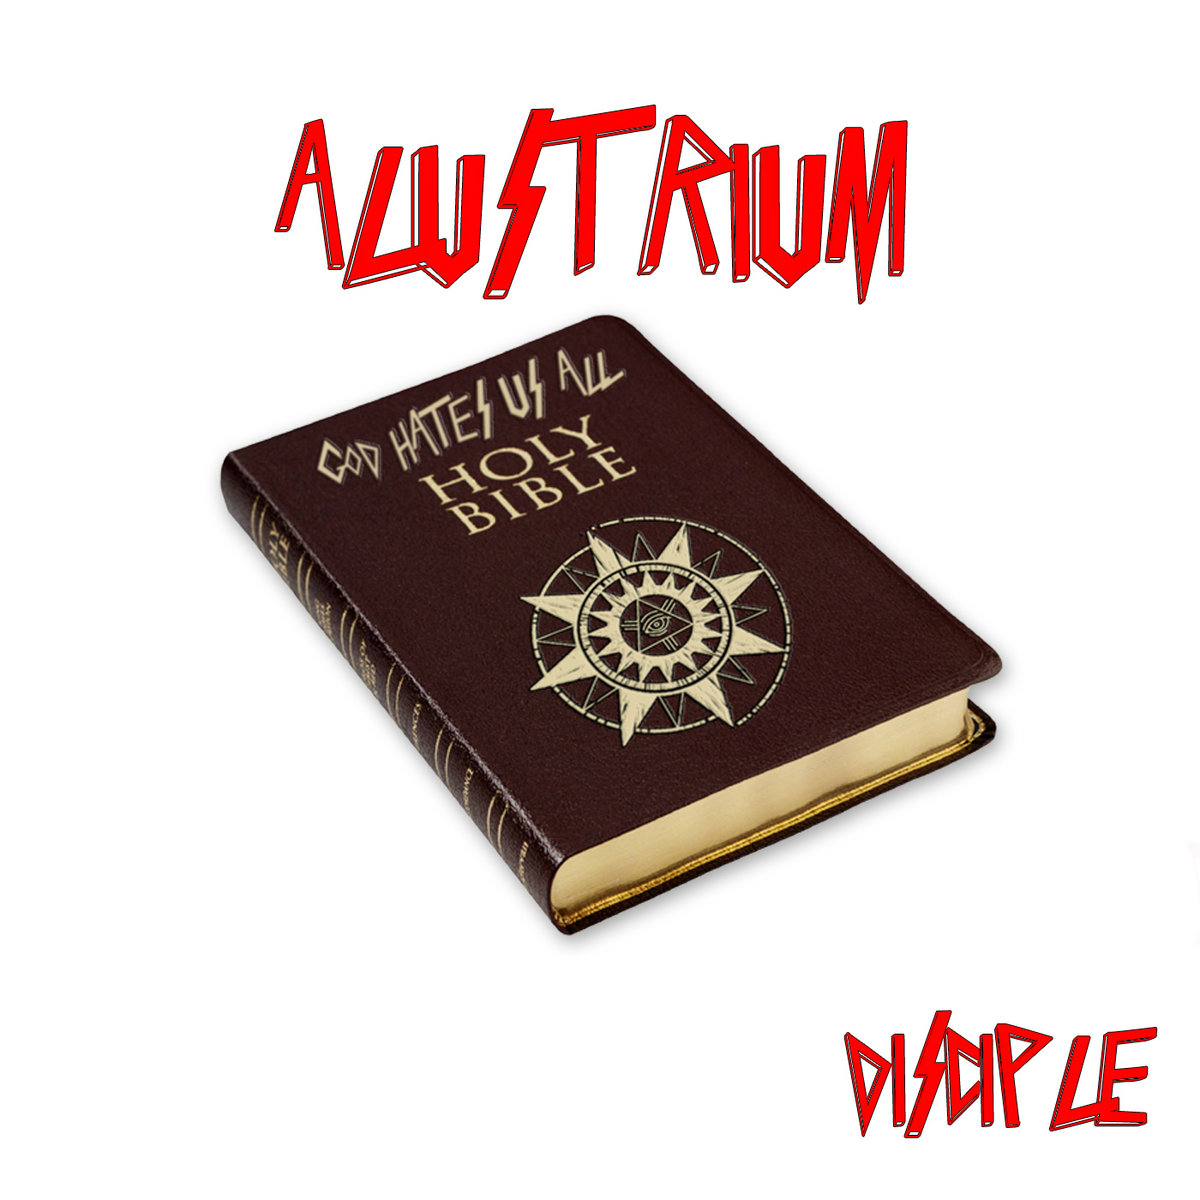 ALUSTRIUM - Disciple cover 